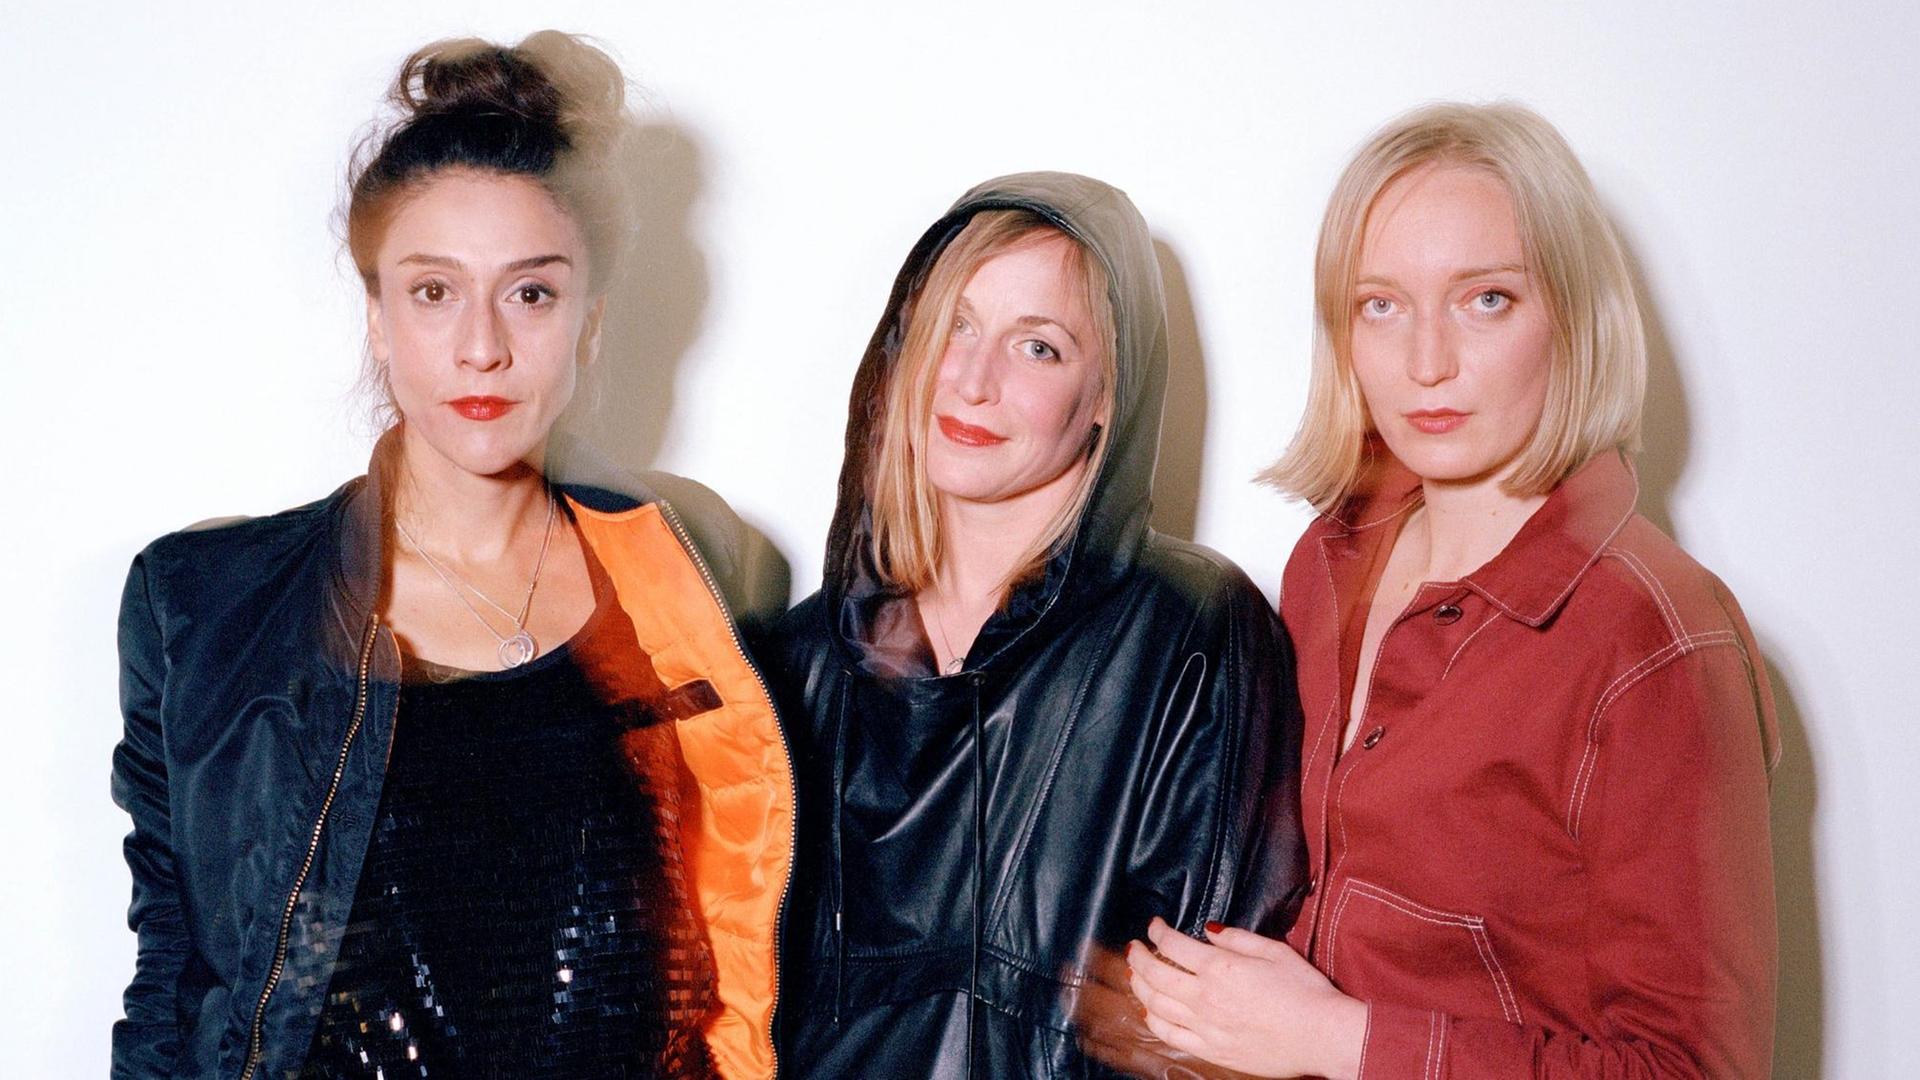 Drei Frauen stehen nebeneinander und blicken in die Kamera. Es sind die neuen Direktorinnen des Theater Neumarkt in Zürich.